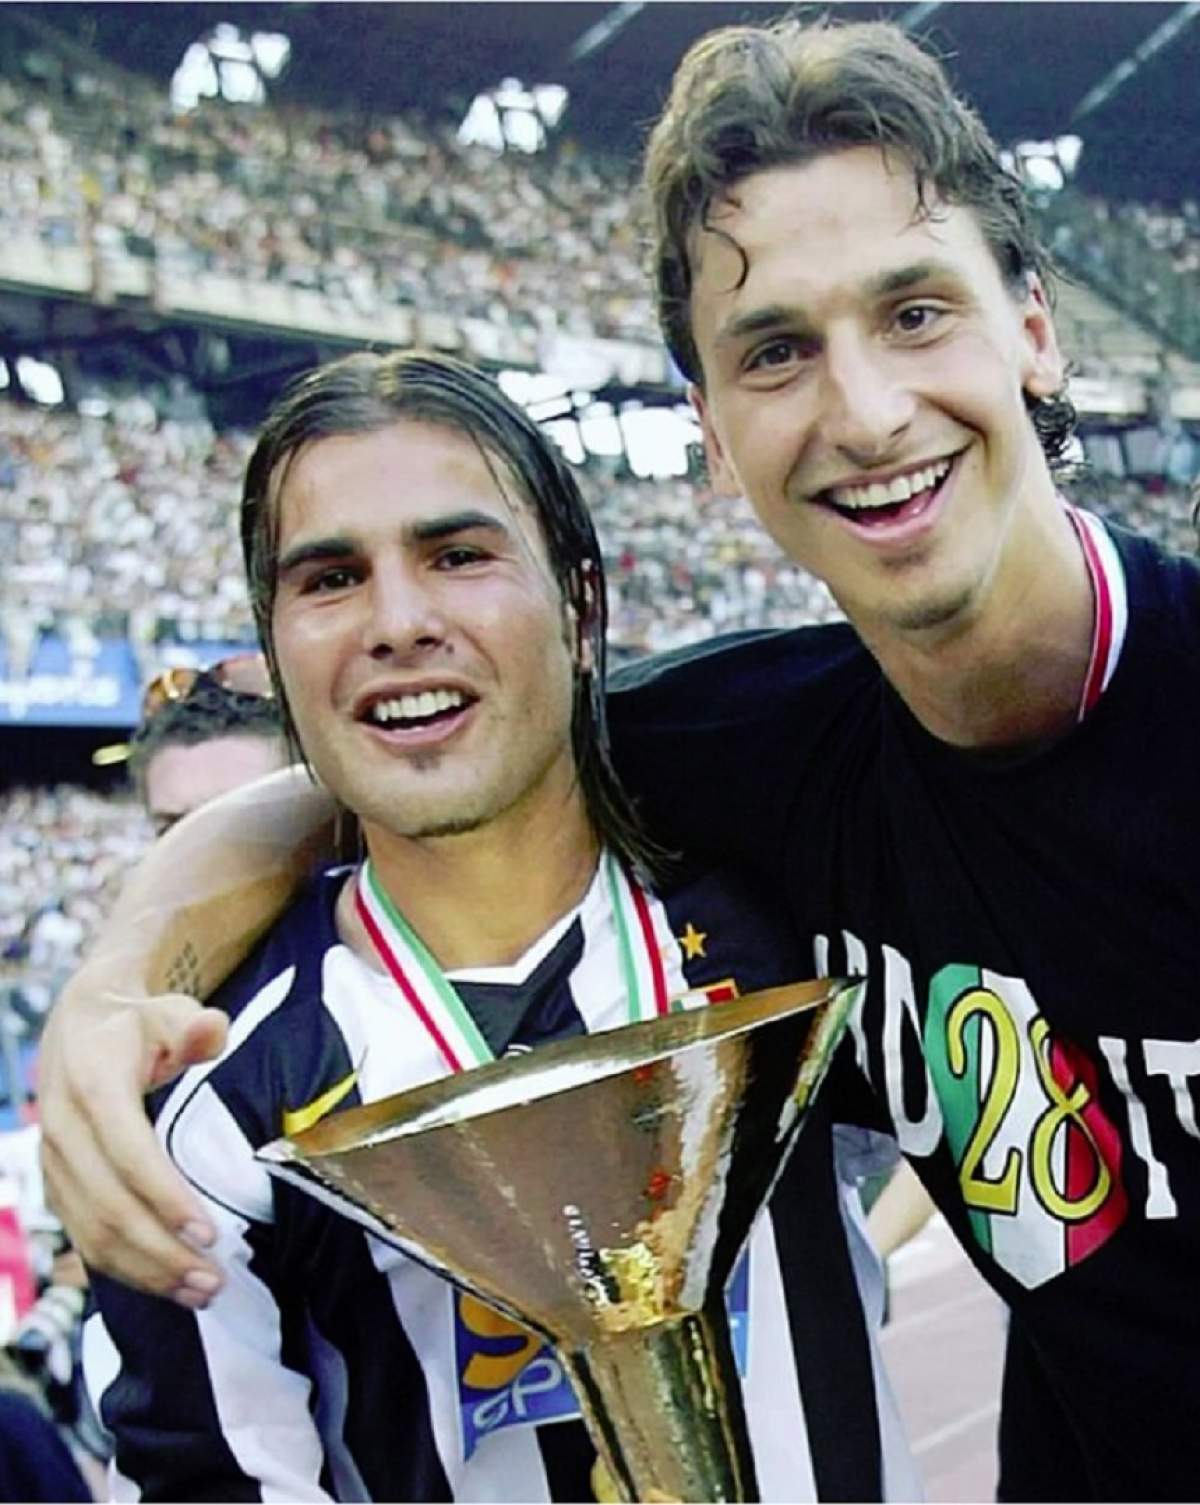 Întâmplare haioasă cu Adrian Mutu şi Zlatan Ibrahimovic, la Juventus! "Adri, trezeşte-te! Am avut un coşmar". Continuare este epică